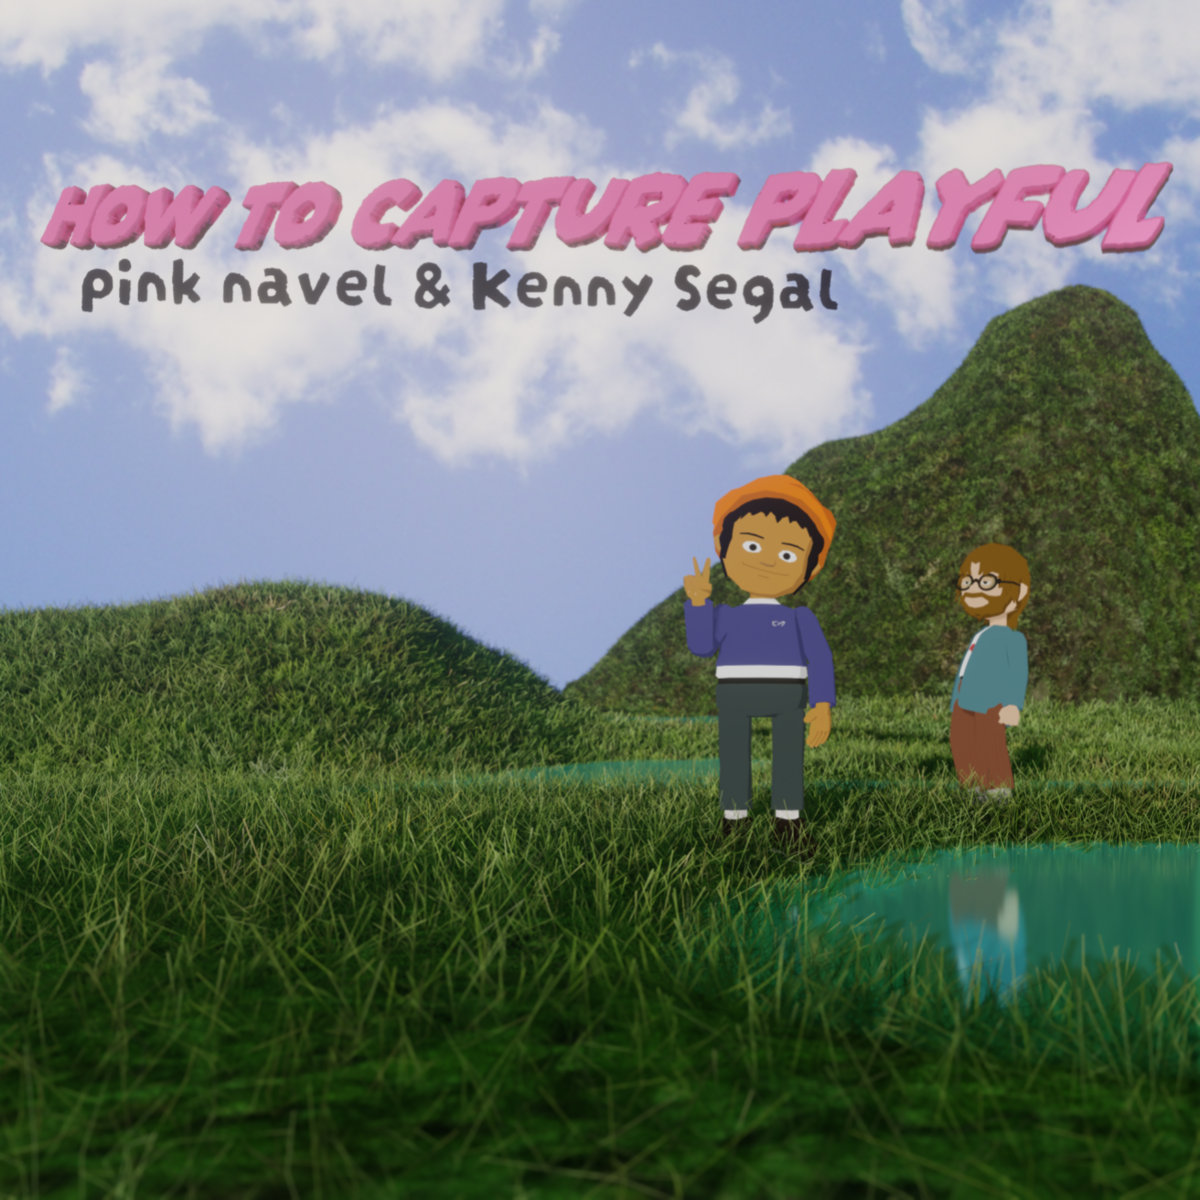 Pink Navel & Kenny Segal